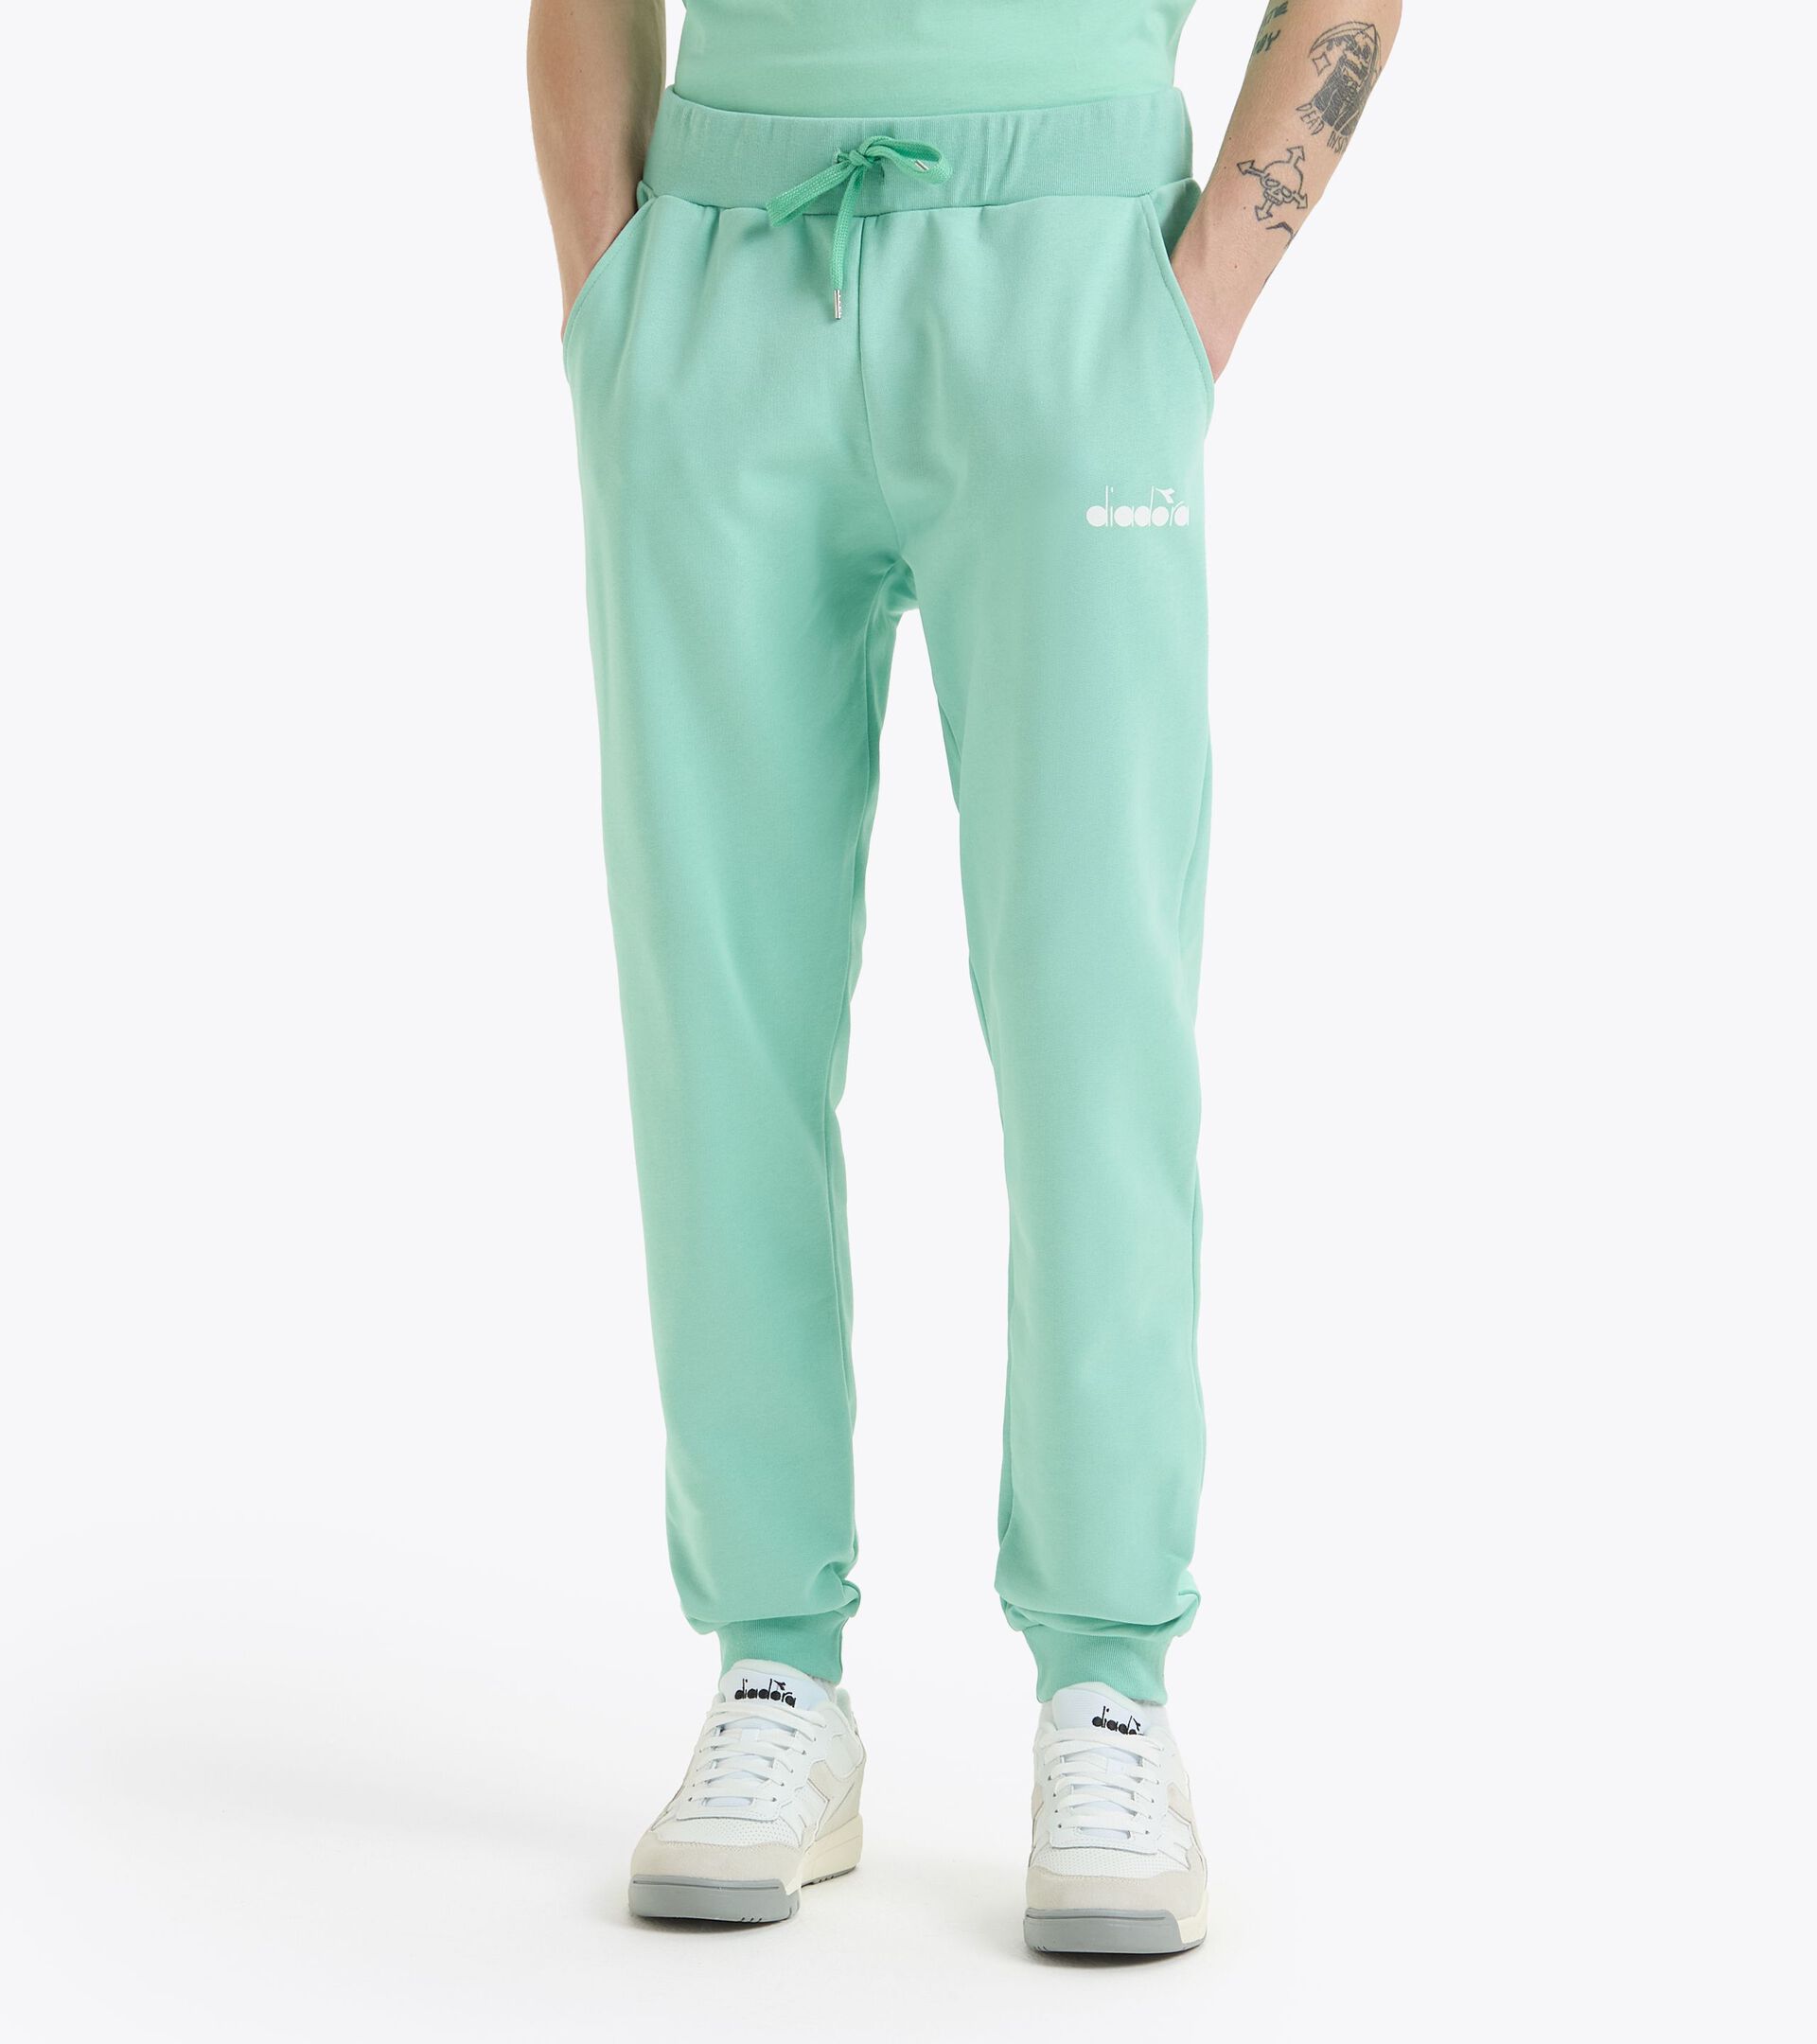 Pantalón deportivo - Made in Italy - Gender neutral PANTS LOGO COL - Diadora